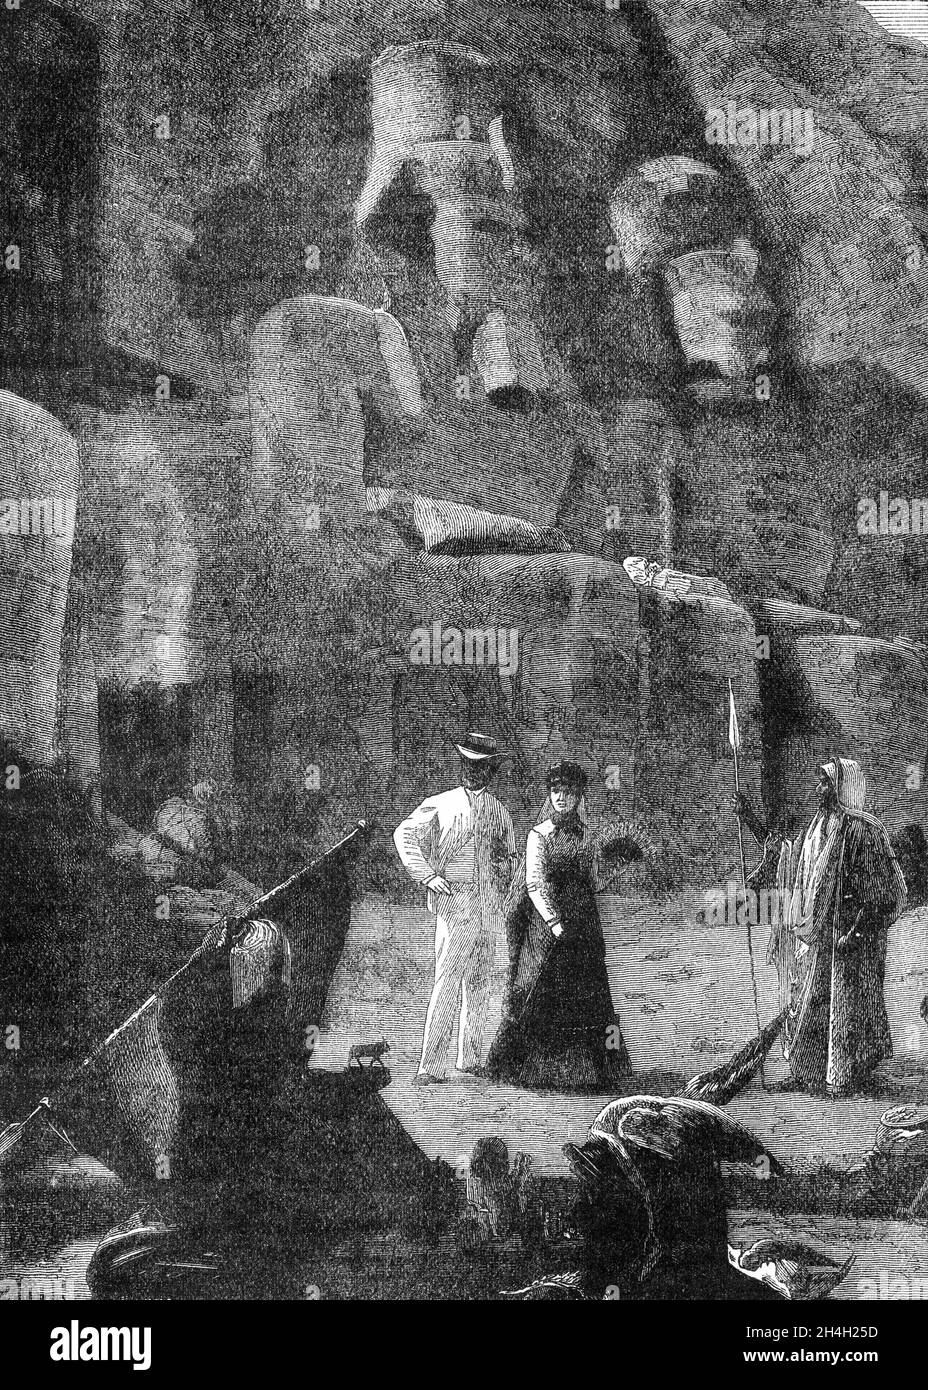 Incisione delle rovine di Tebe in Egitto, da una pubblicazione circa 1880 Foto Stock